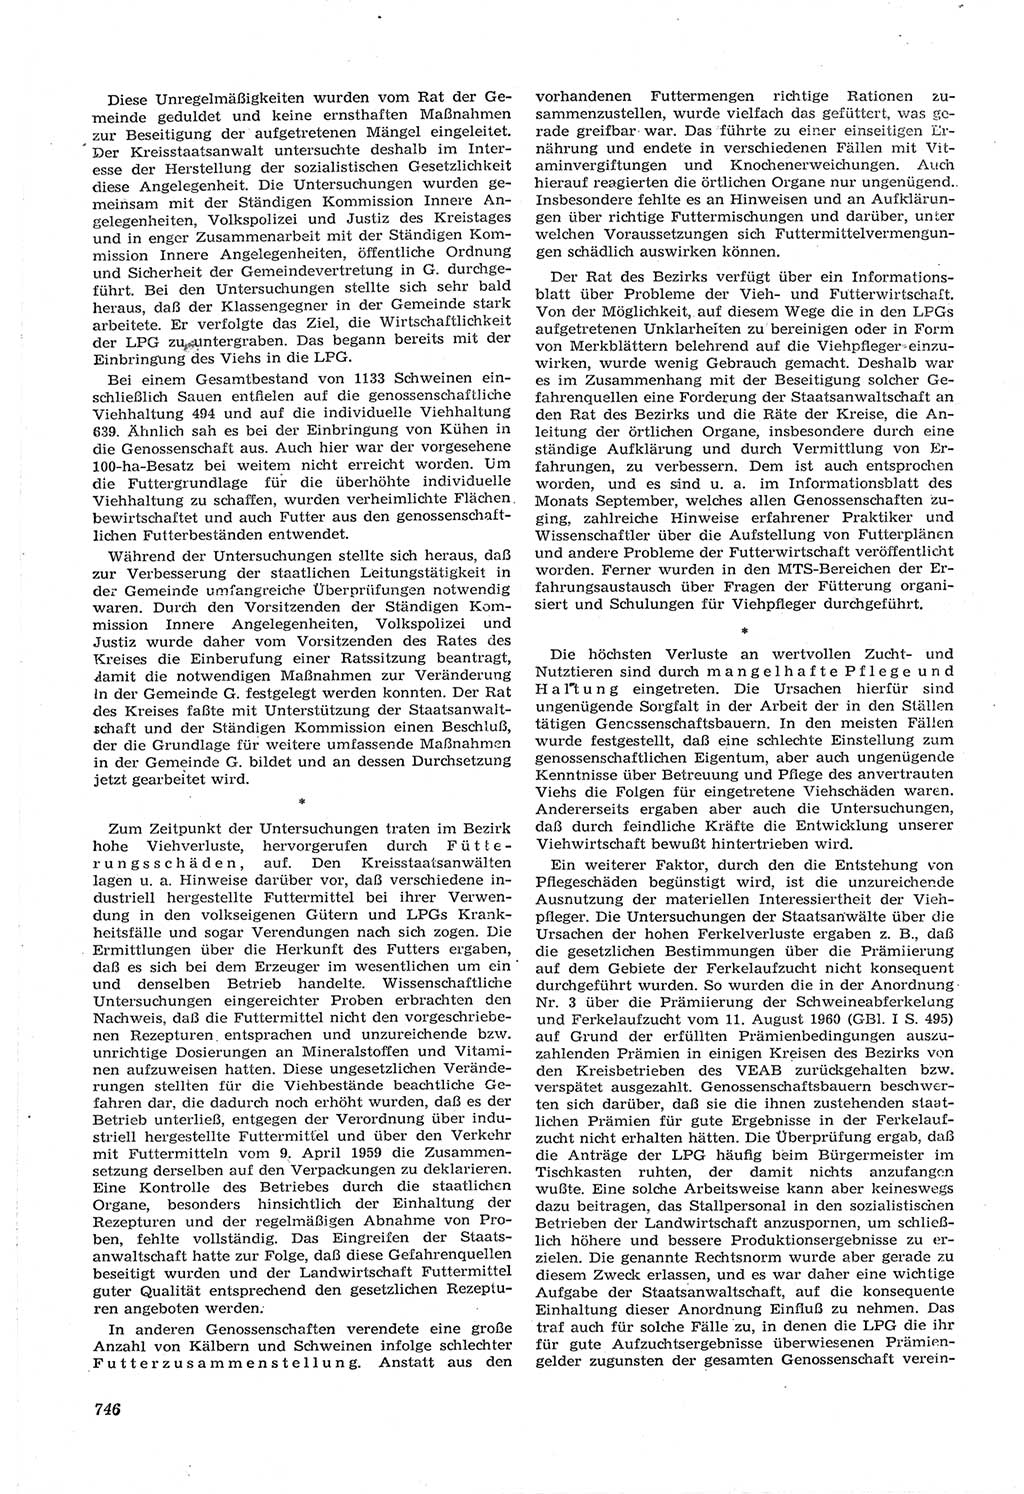 Neue Justiz (NJ), Zeitschrift für Recht und Rechtswissenschaft [Deutsche Demokratische Republik (DDR)], 14. Jahrgang 1960, Seite 746 (NJ DDR 1960, S. 746)